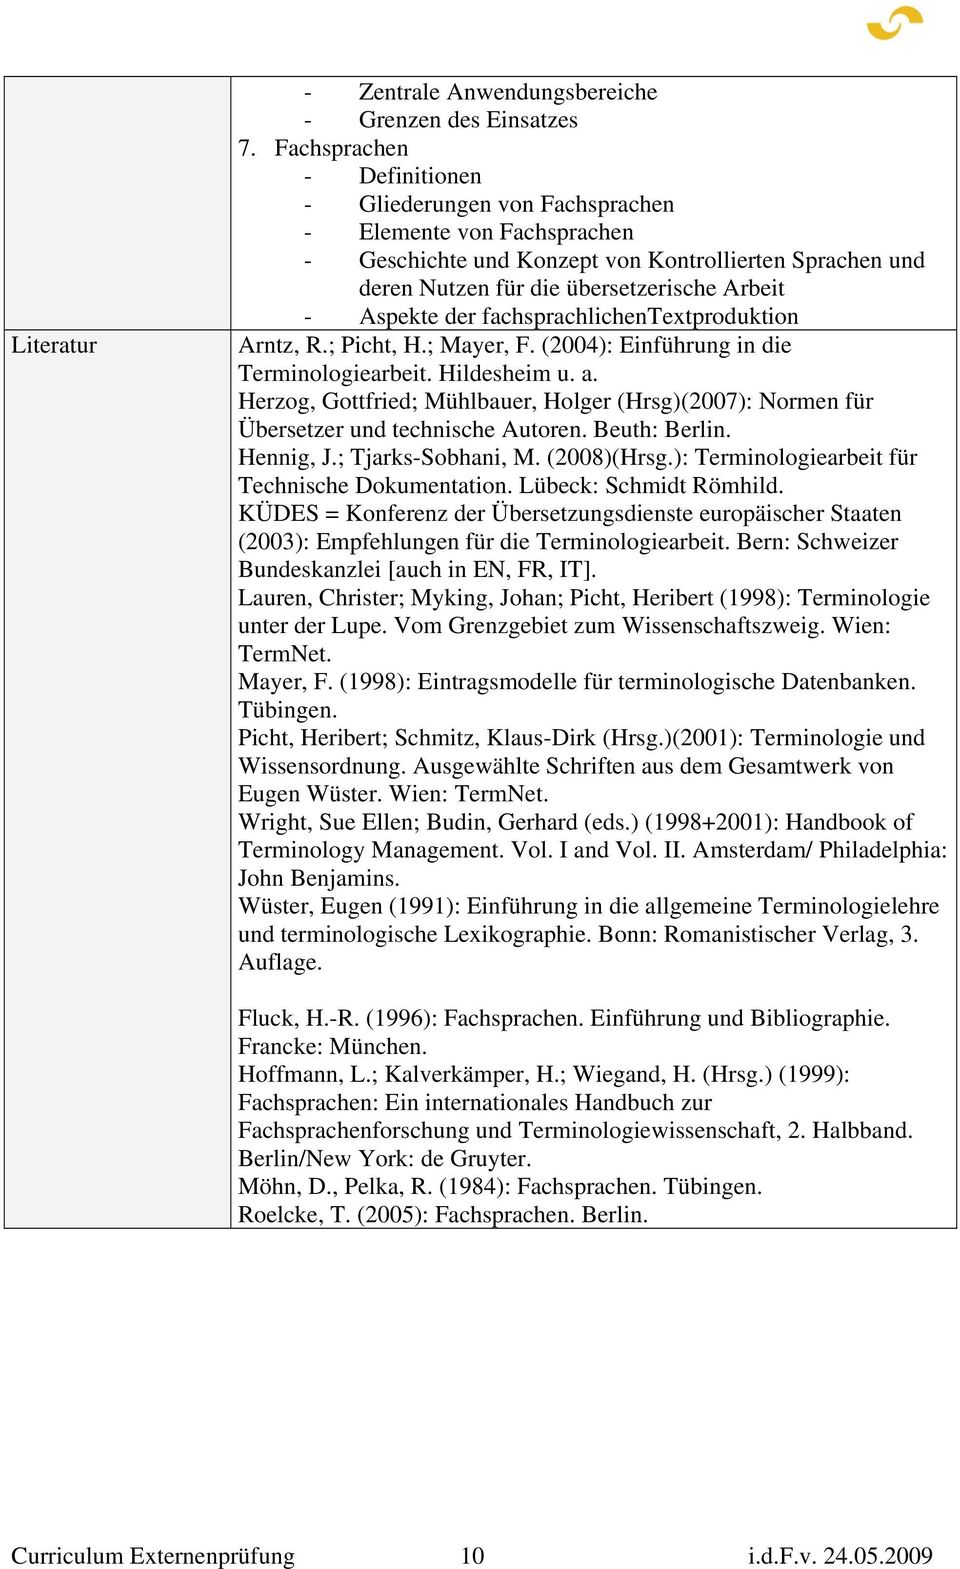 der fachsprachlichentextproduktion Arntz, R.; Picht, H.; Mayer, F. (2004): Einführung in die Terminologiearbeit. Hildesheim u. a.